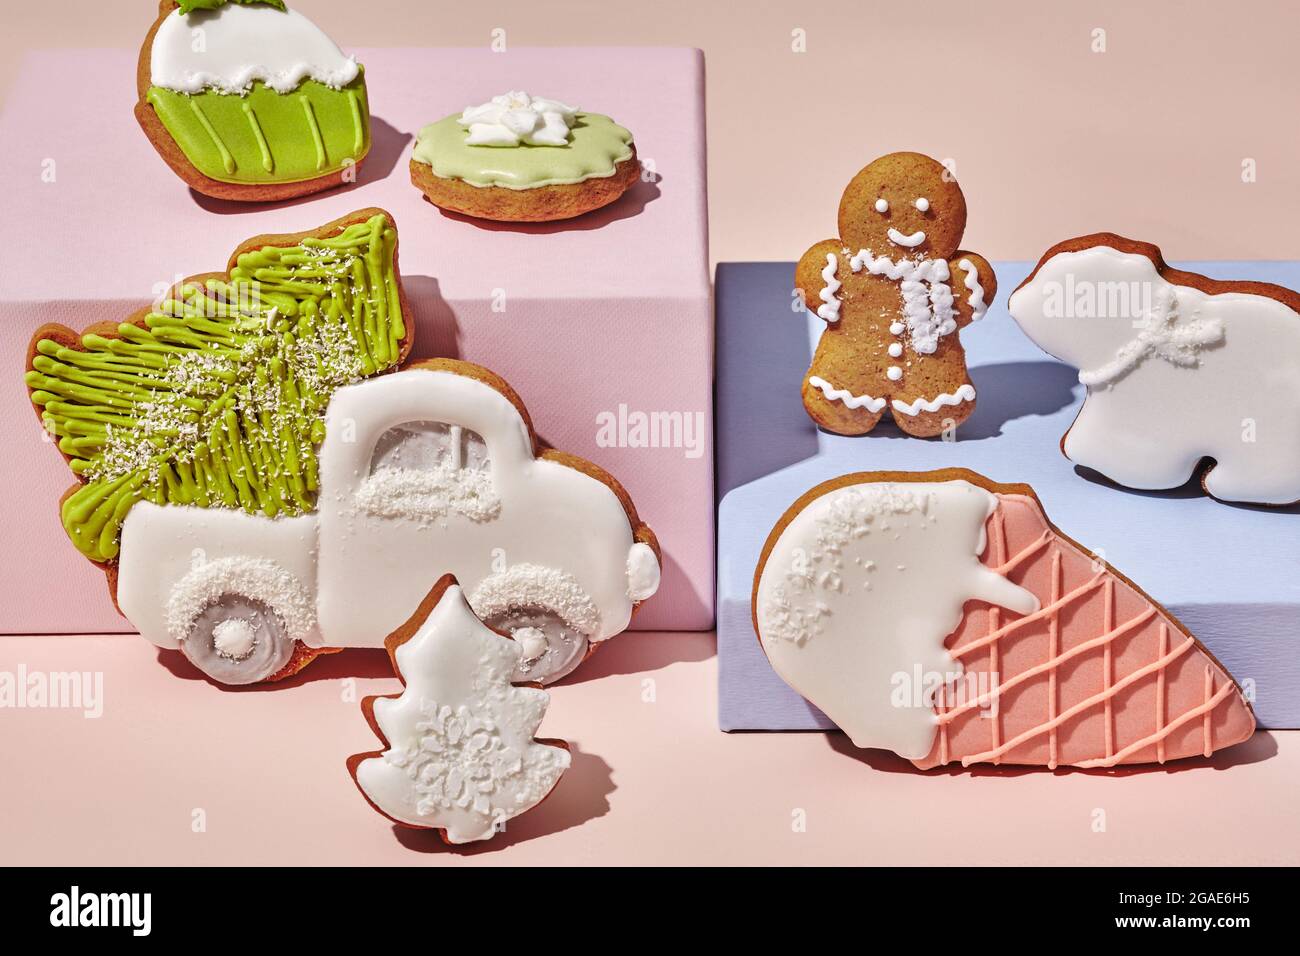 Biscuits au pain d'épice sur fond rose et bleu pastel Photo Stock - Alamy